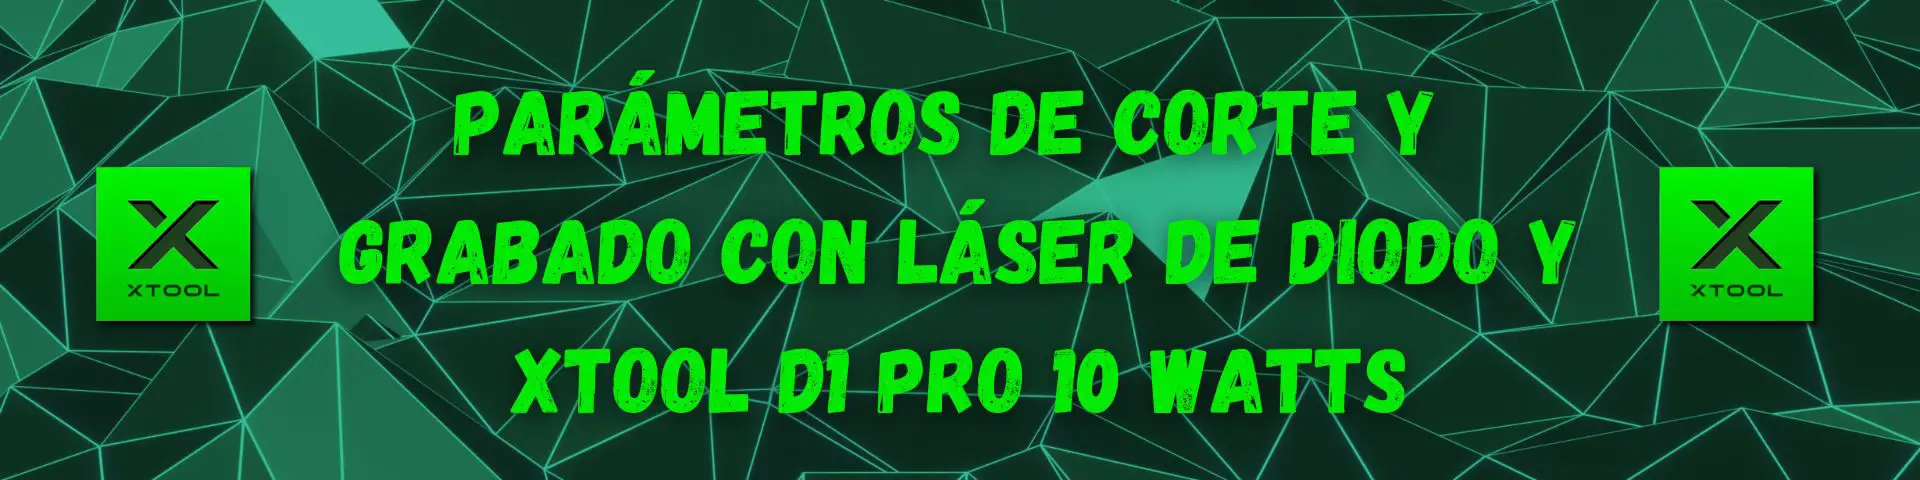 Parametros de Corte y Grabado Laser de Diodo y Xtool D1 Pro 10 watts